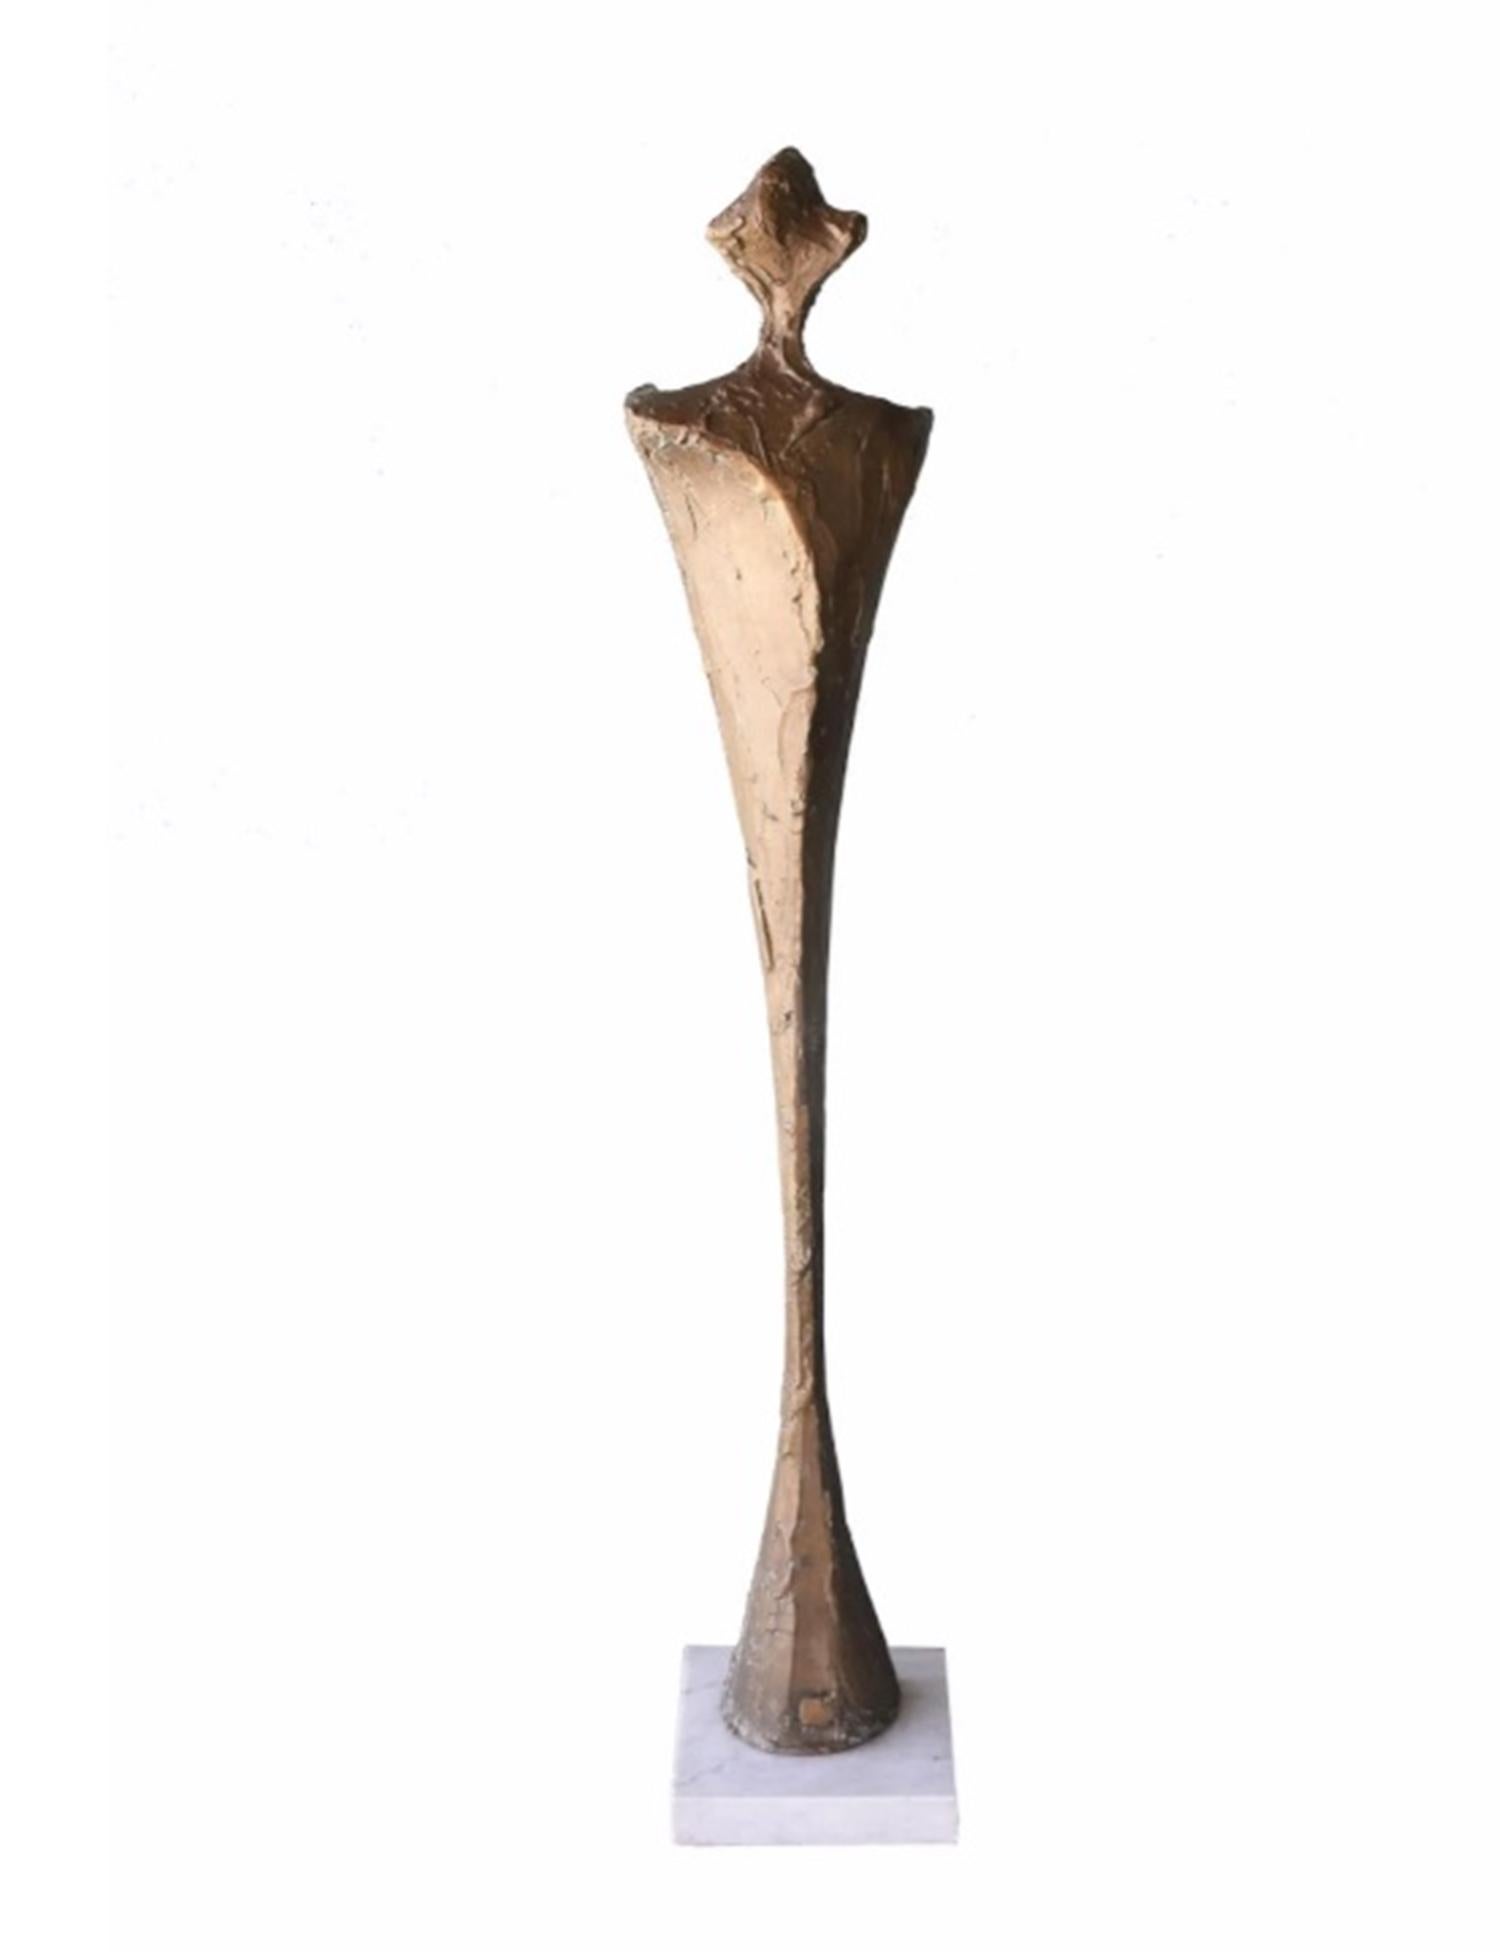 Wir präsentieren die atemberaubende Bronze-Skulptur von Antonio Kieff Grediaga, signiert und nummeriert 1/6. 

Das Stück trägt den Titel 